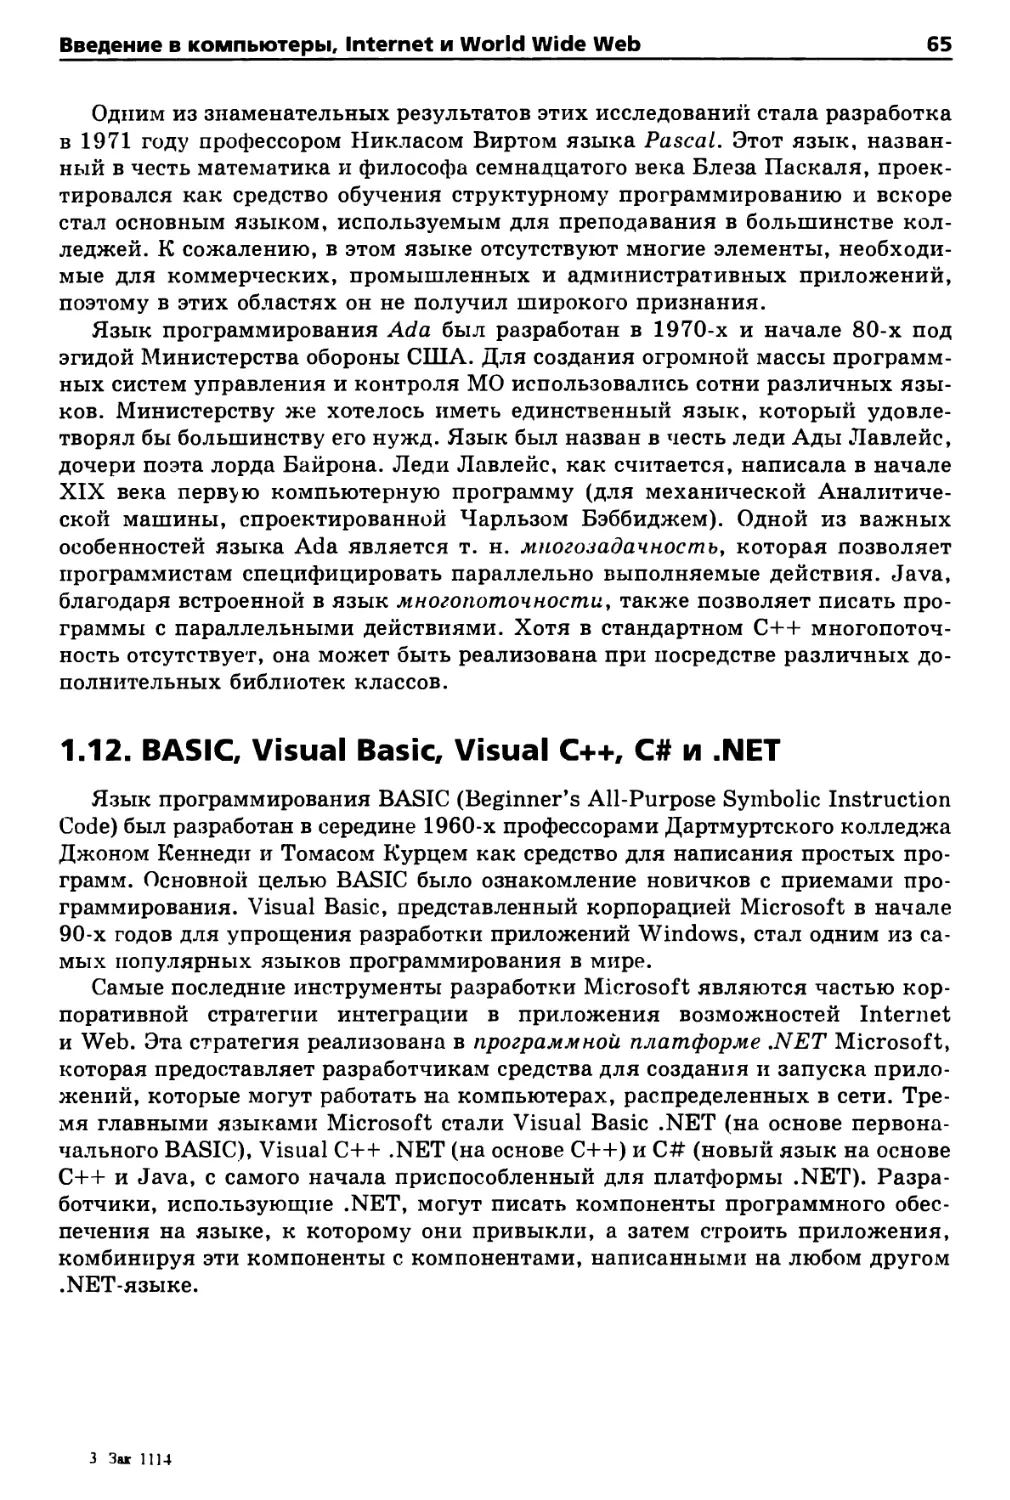 1.12. BASIC, Visual Basic, Visual C++, C# и .NET